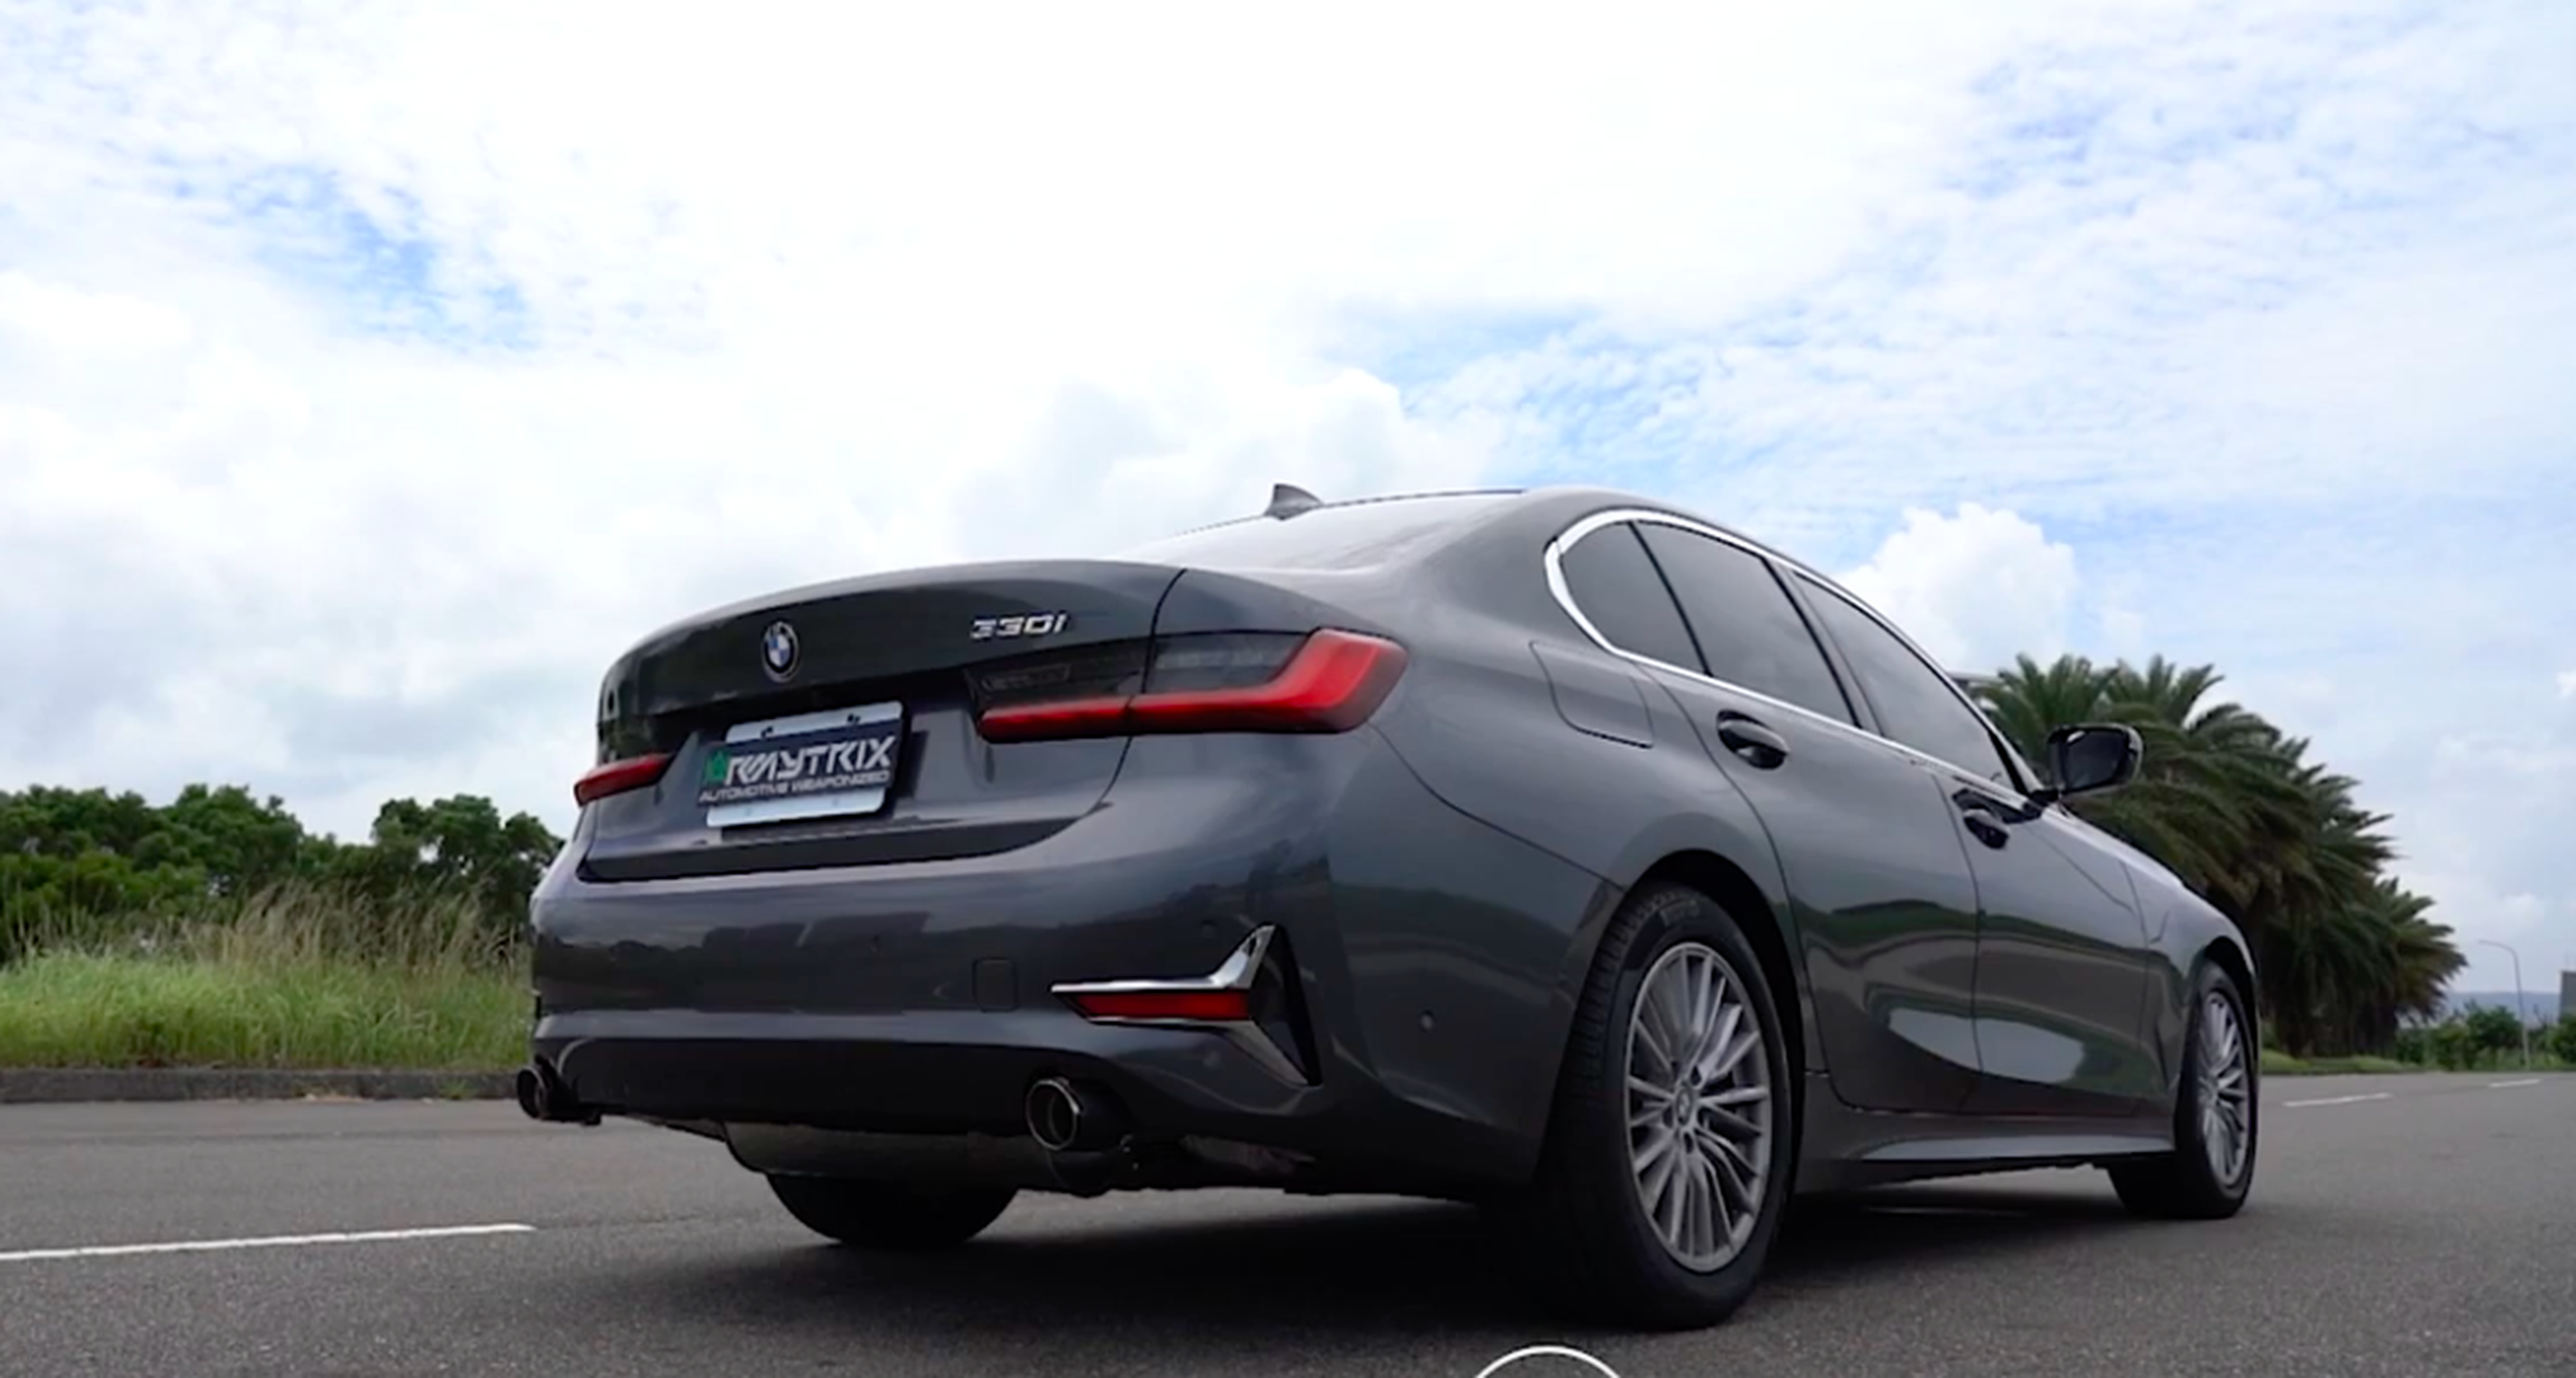 VÍDEO: ¡Sube el volumen! Mira cómo ruge este BMW Serie 3 2019 con escapes modificados